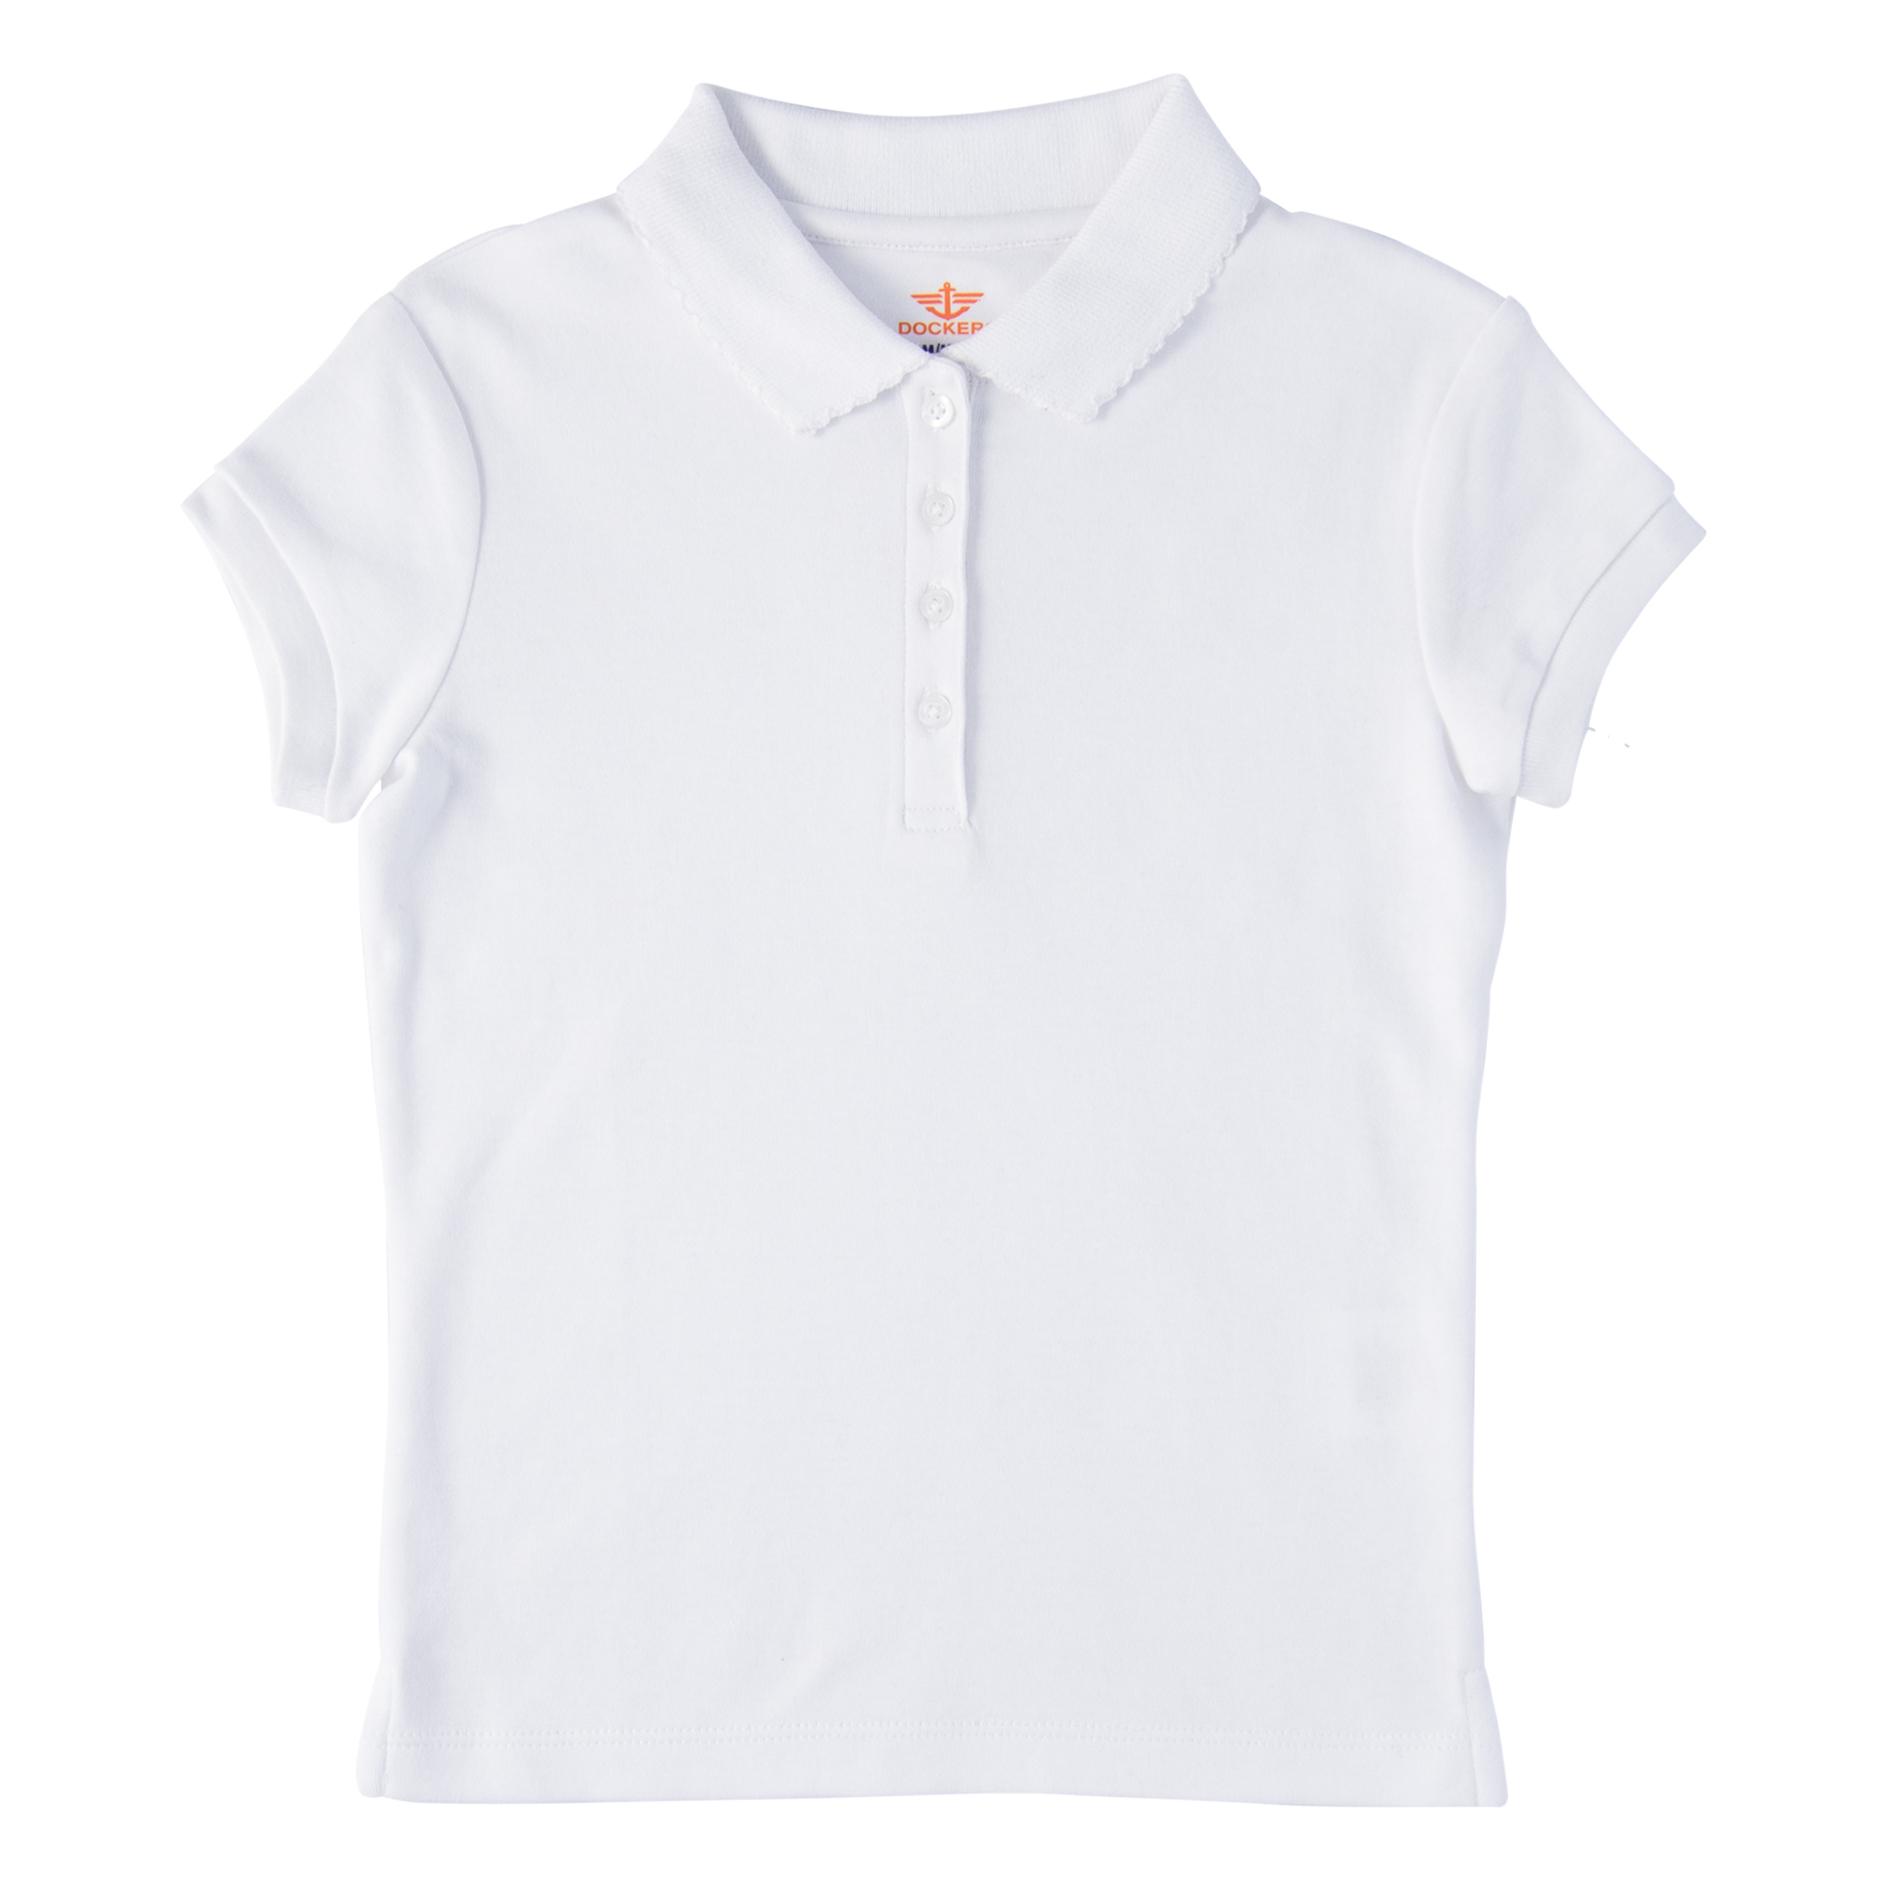 Dockers Girls' Polo Shirt